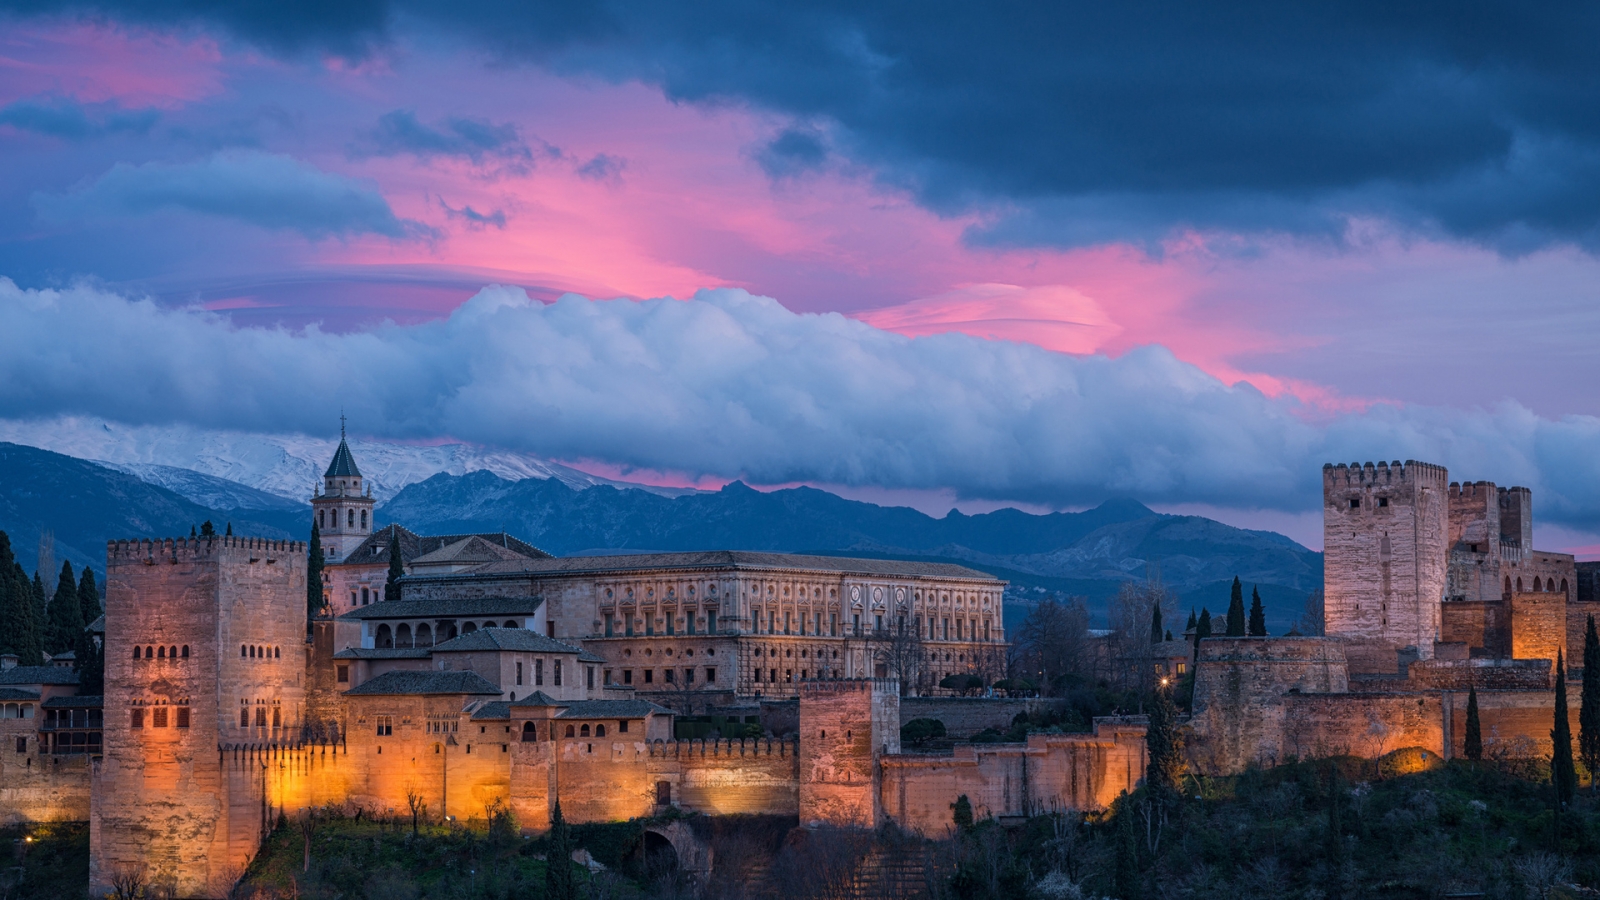 Alhambra Spain for 1600 x 900 HDTV resolution